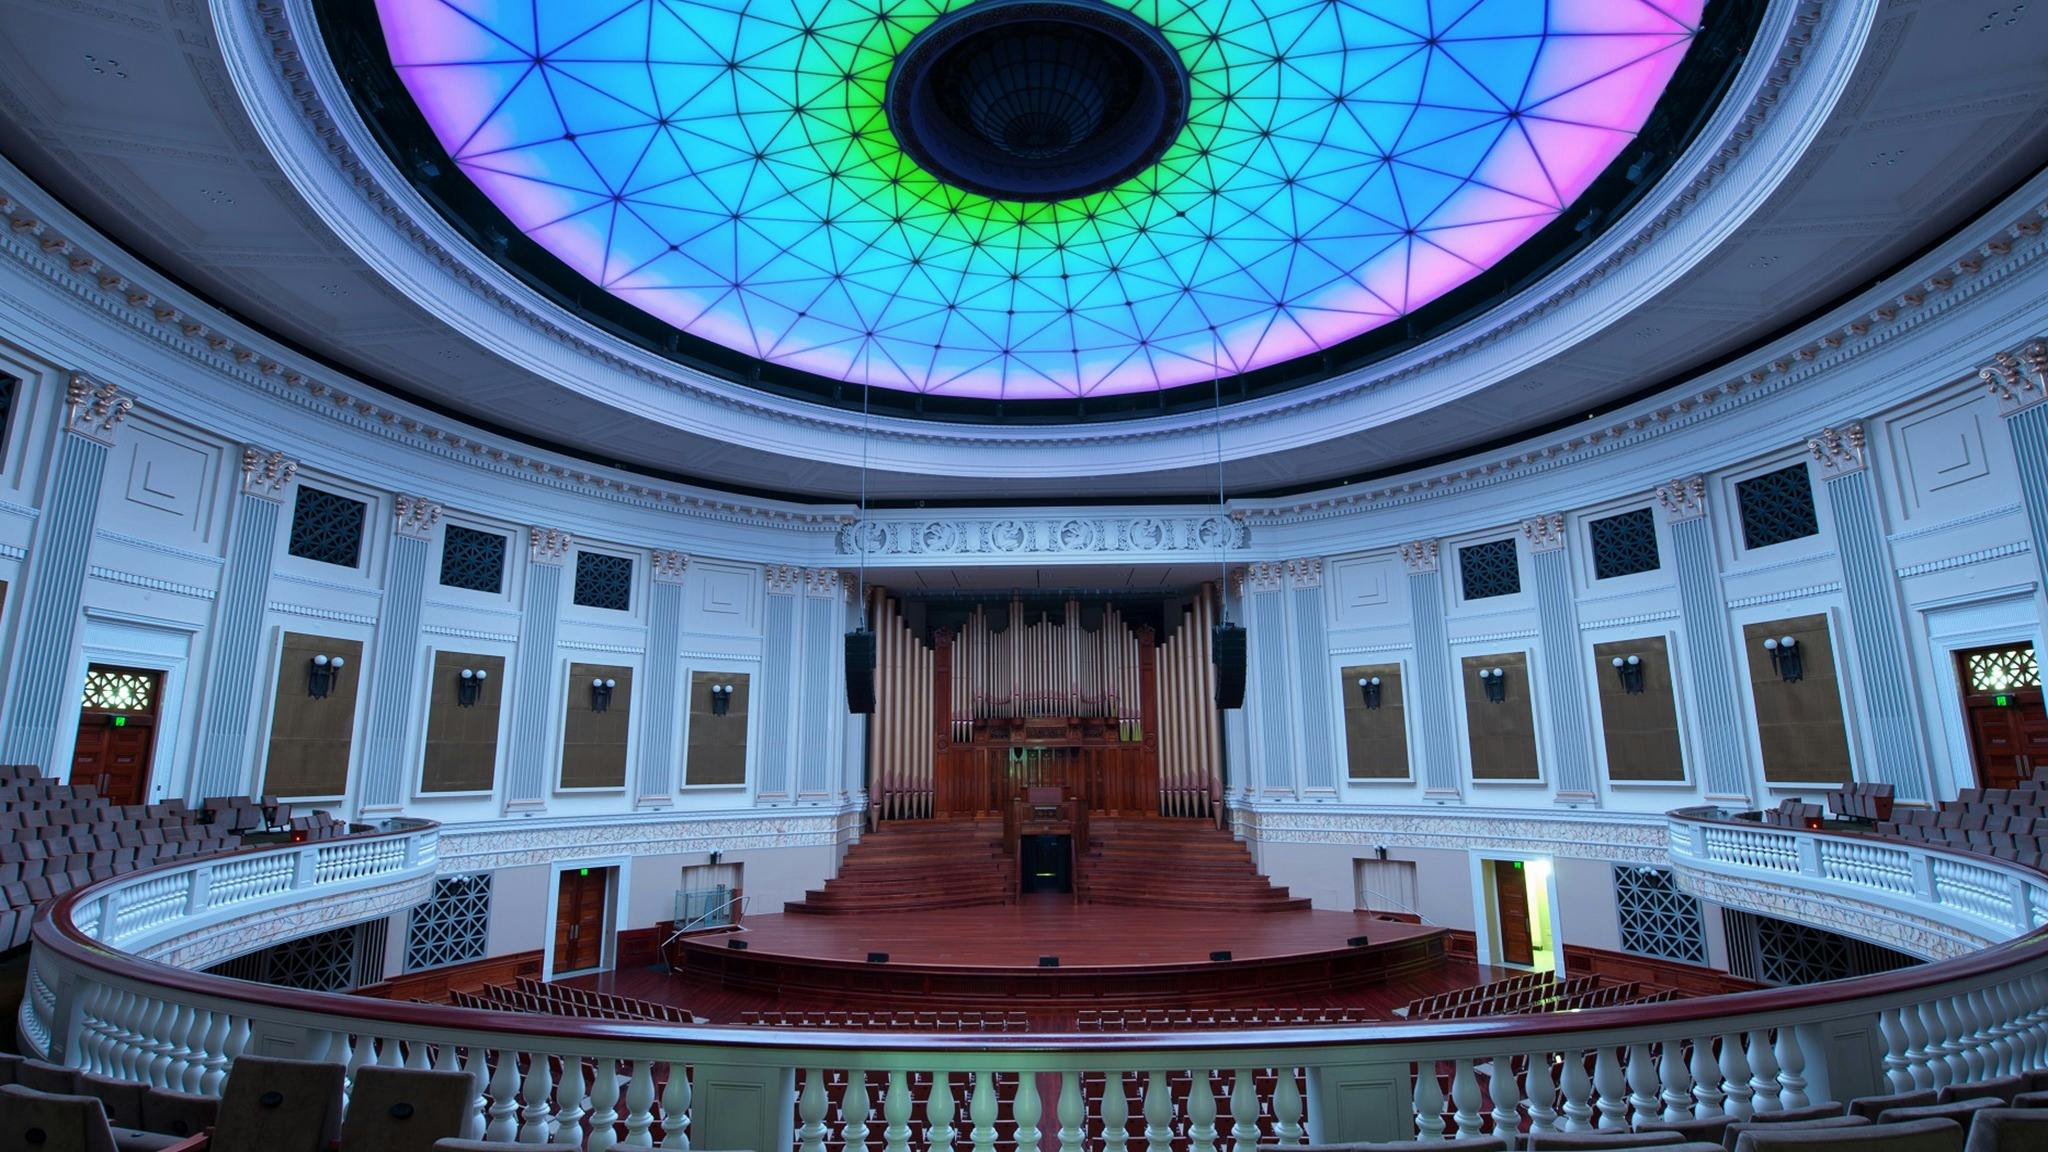 Brisbane City Hall Auditorium